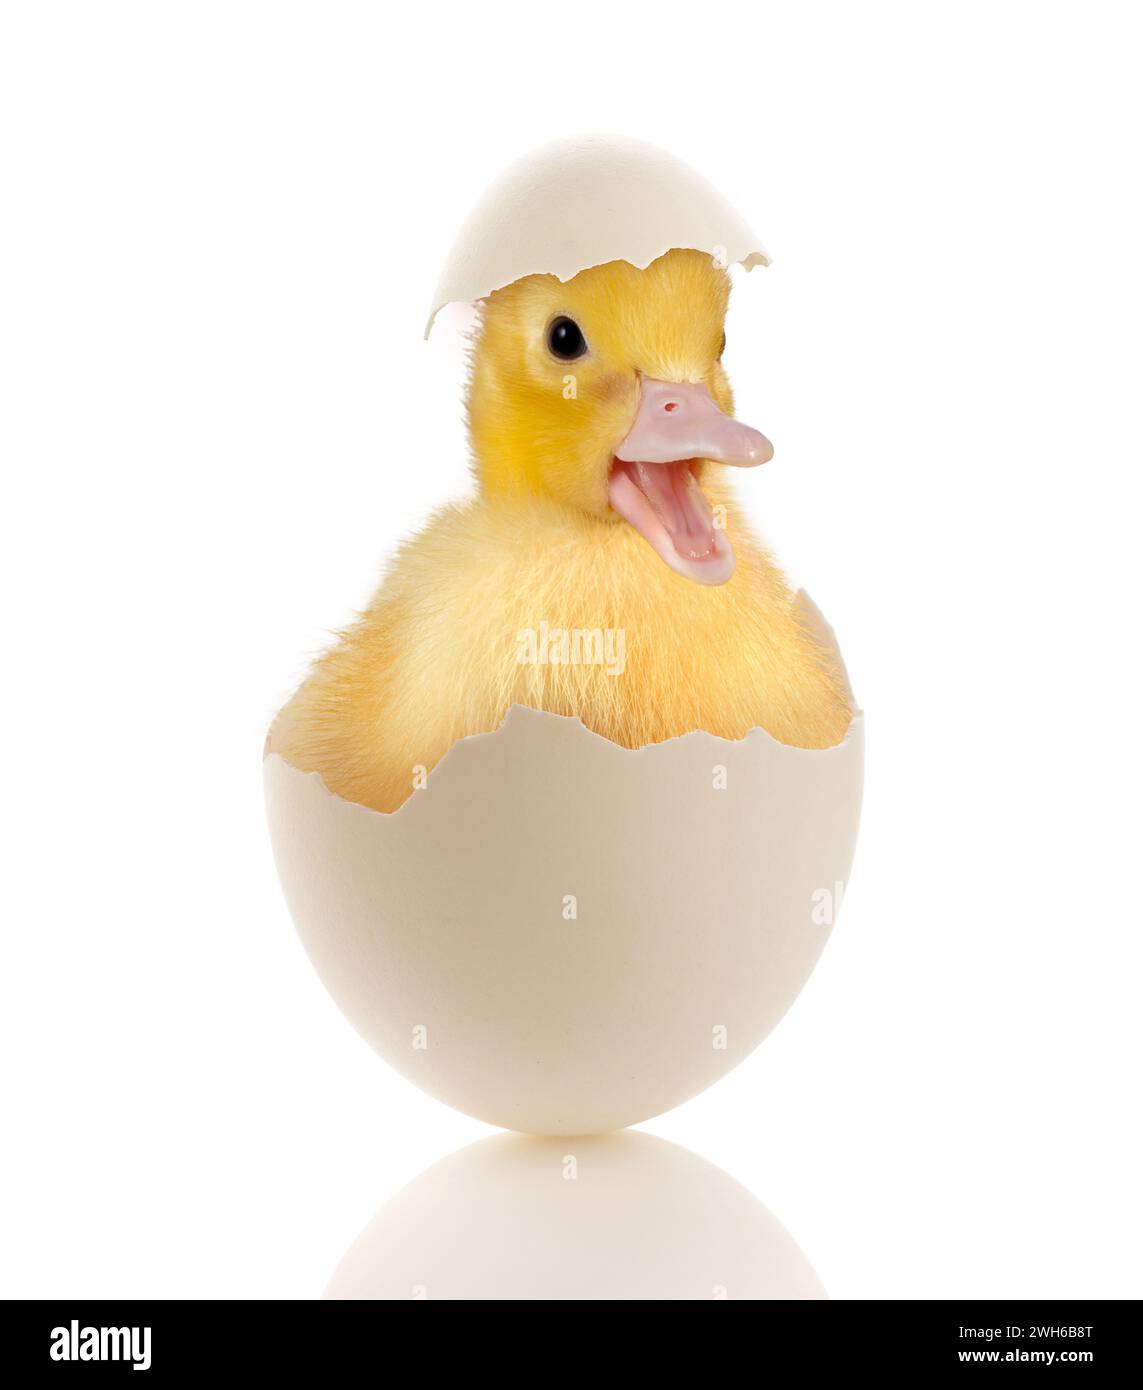 Image de Pâques d'un petit canard drôle assis dans un œuf cassé Banque D'Images